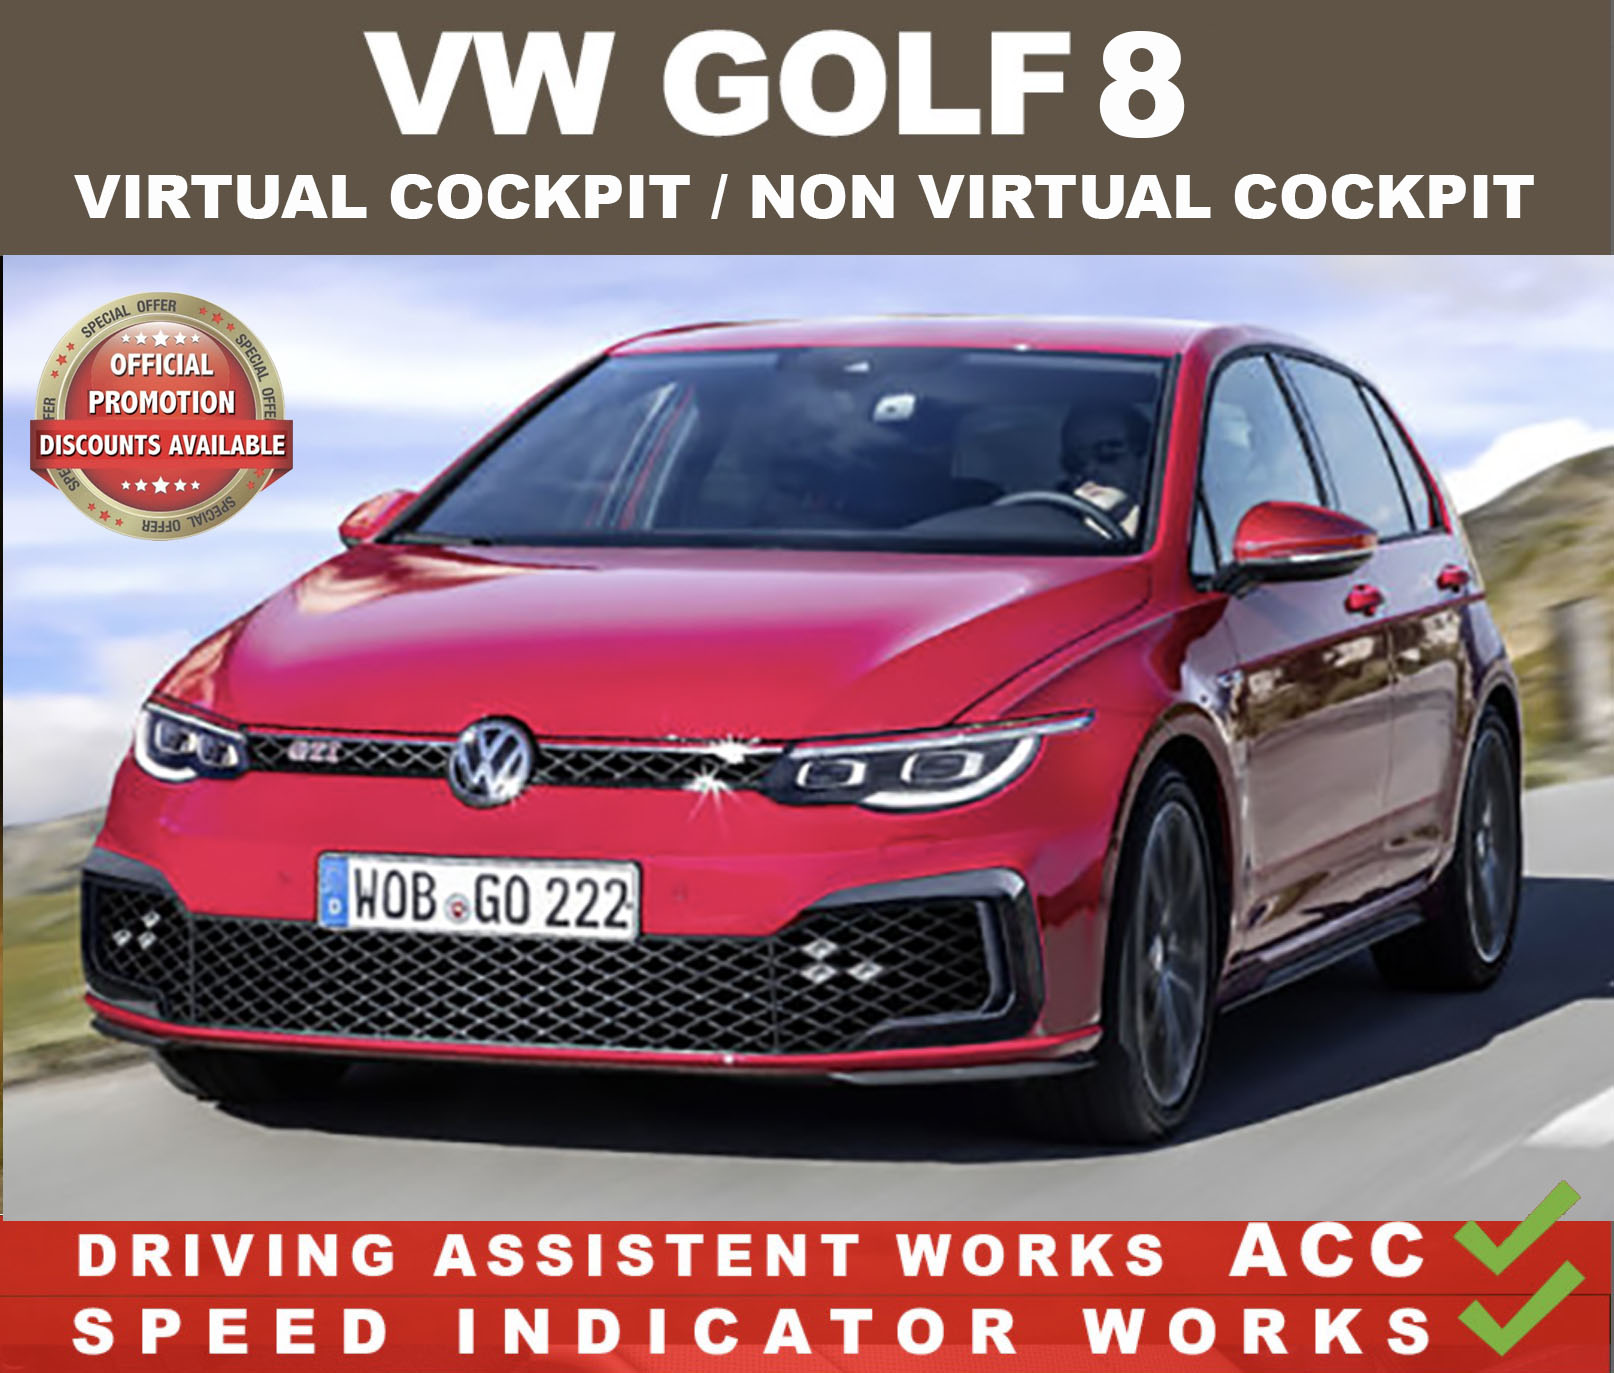 Mileage blocker for Volkswagen Golf VII